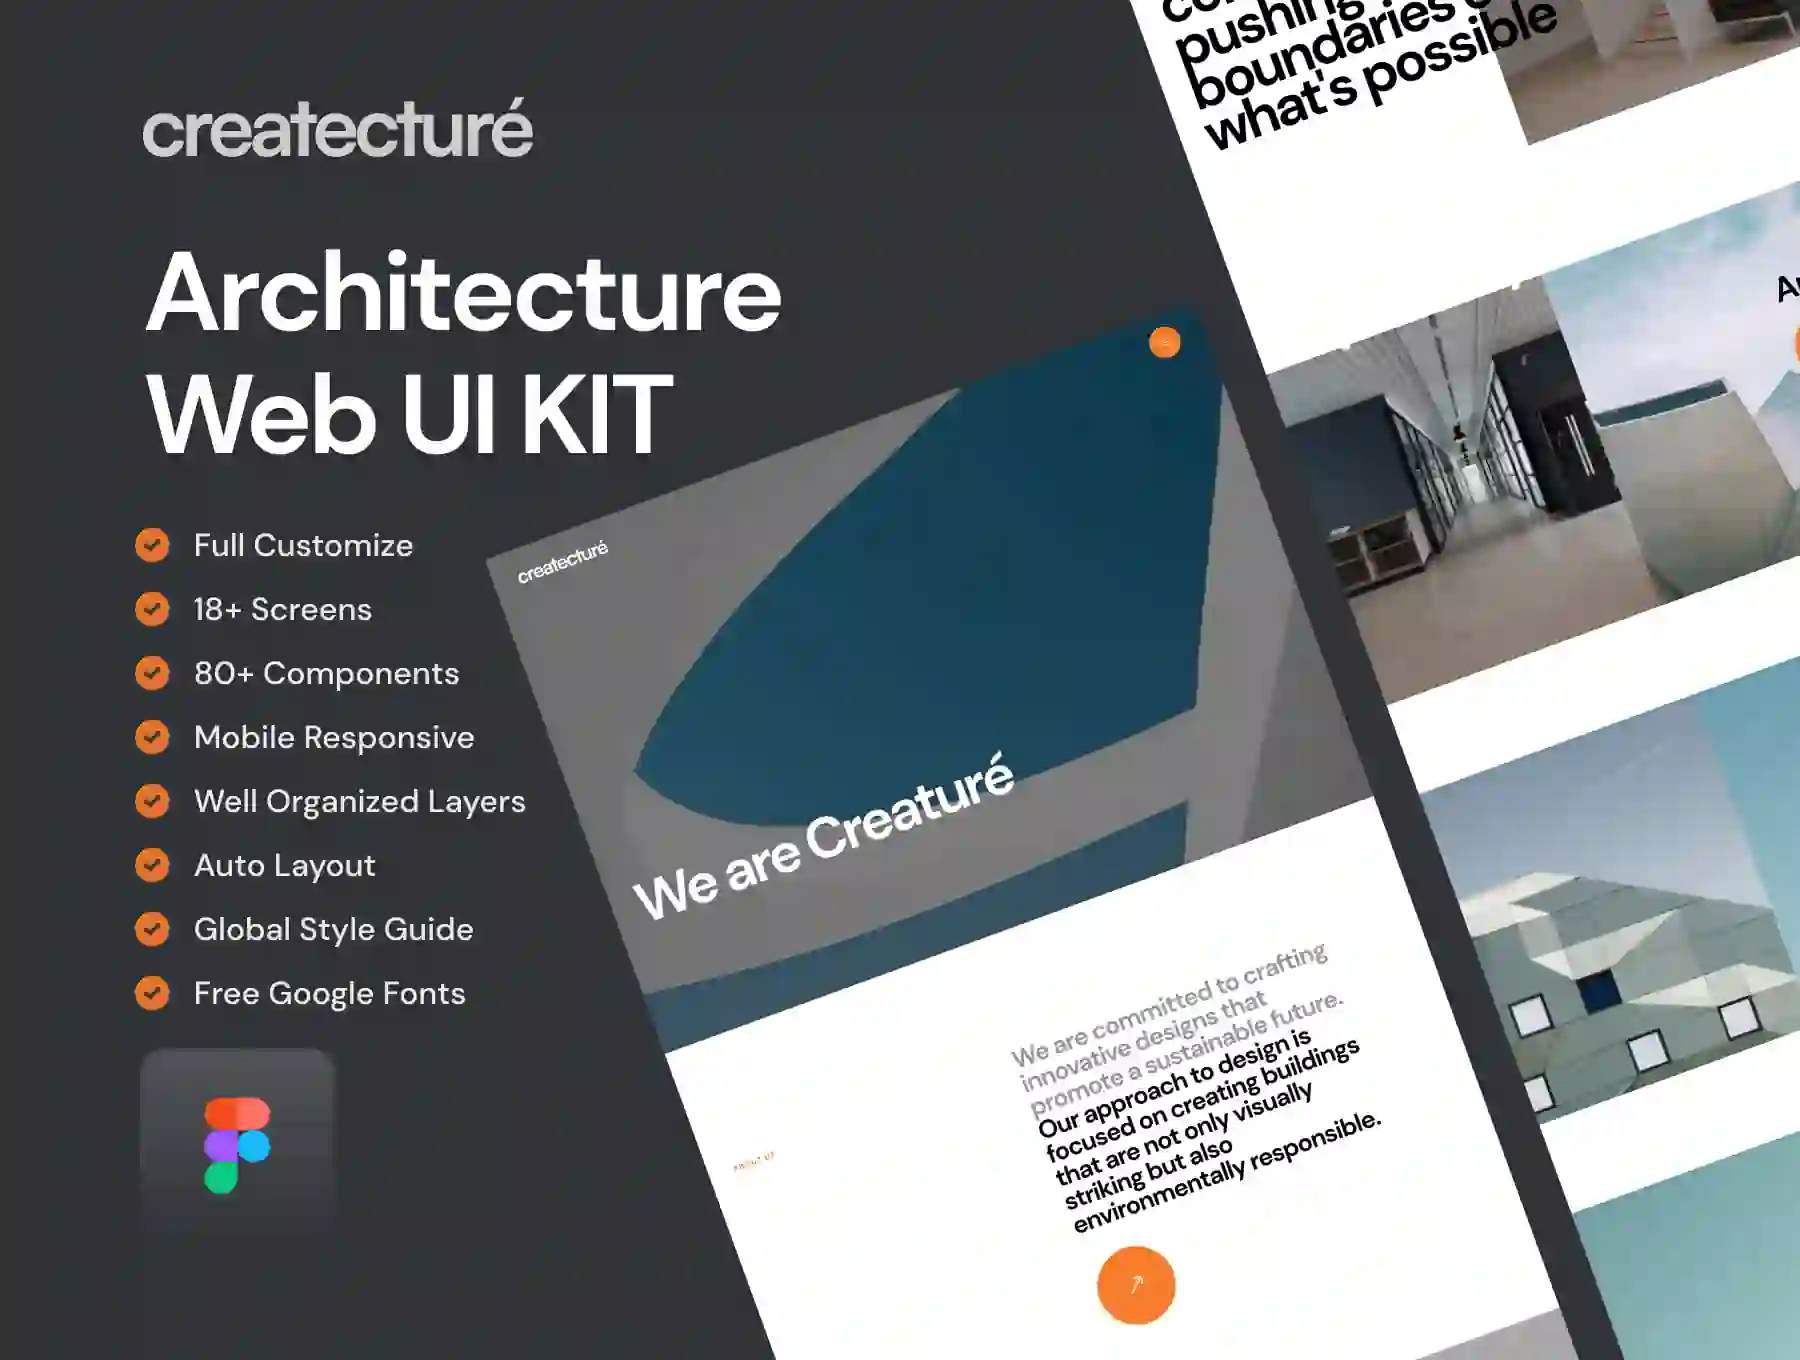 Creature - Architecture Website